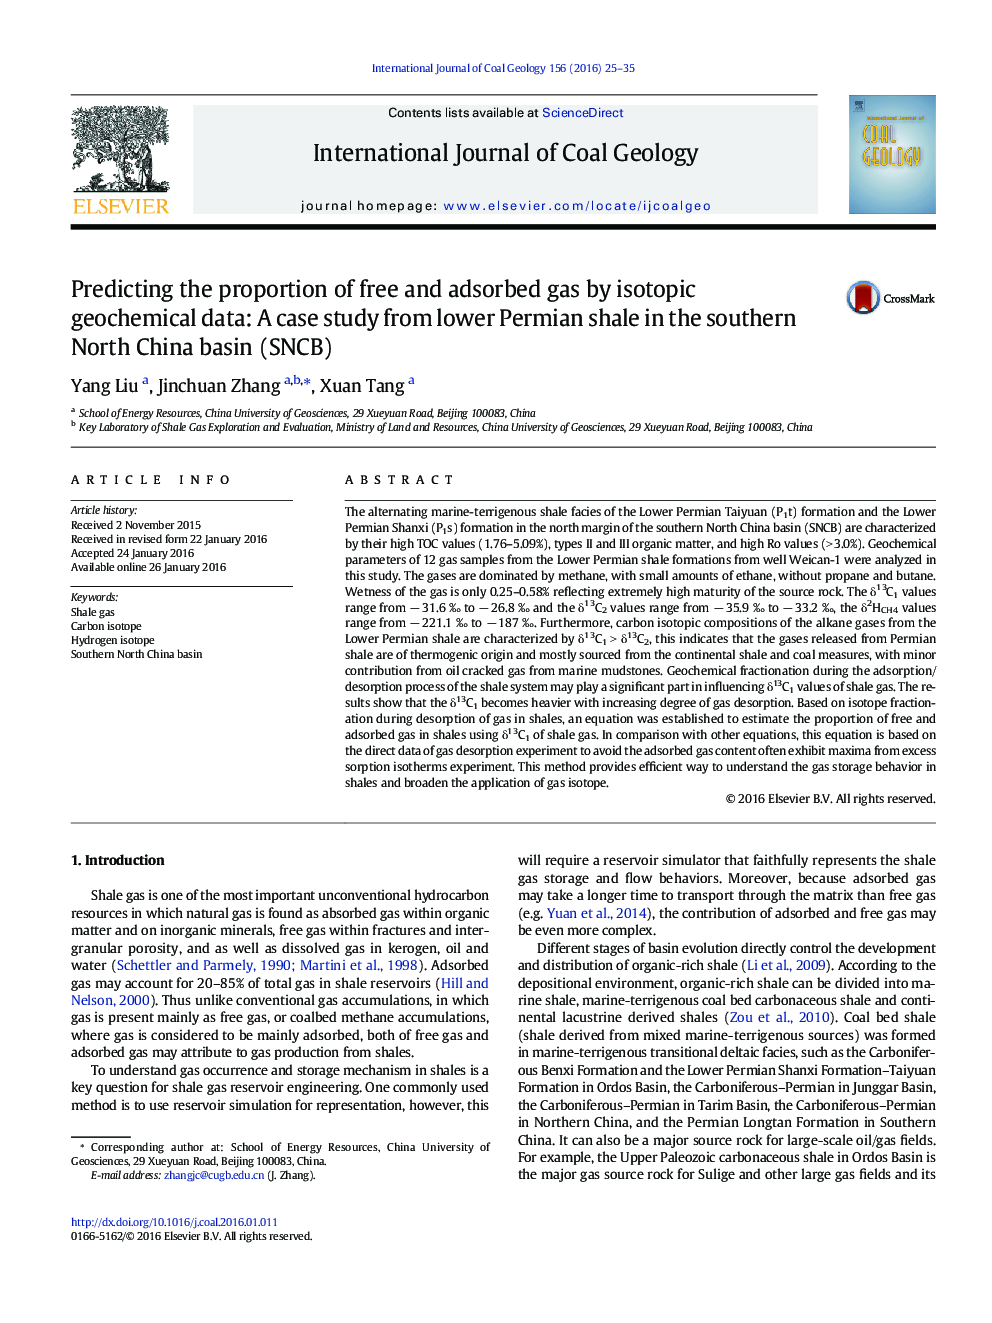 پیش بینی نسبت گاز آزاد و جذب با استفاده از داده های ژئوشیمیایی و ایزوتوپی: مطالعه موردی از شیل پرمین کمتر در حوضه شمال چین جنوبی (SNCB)